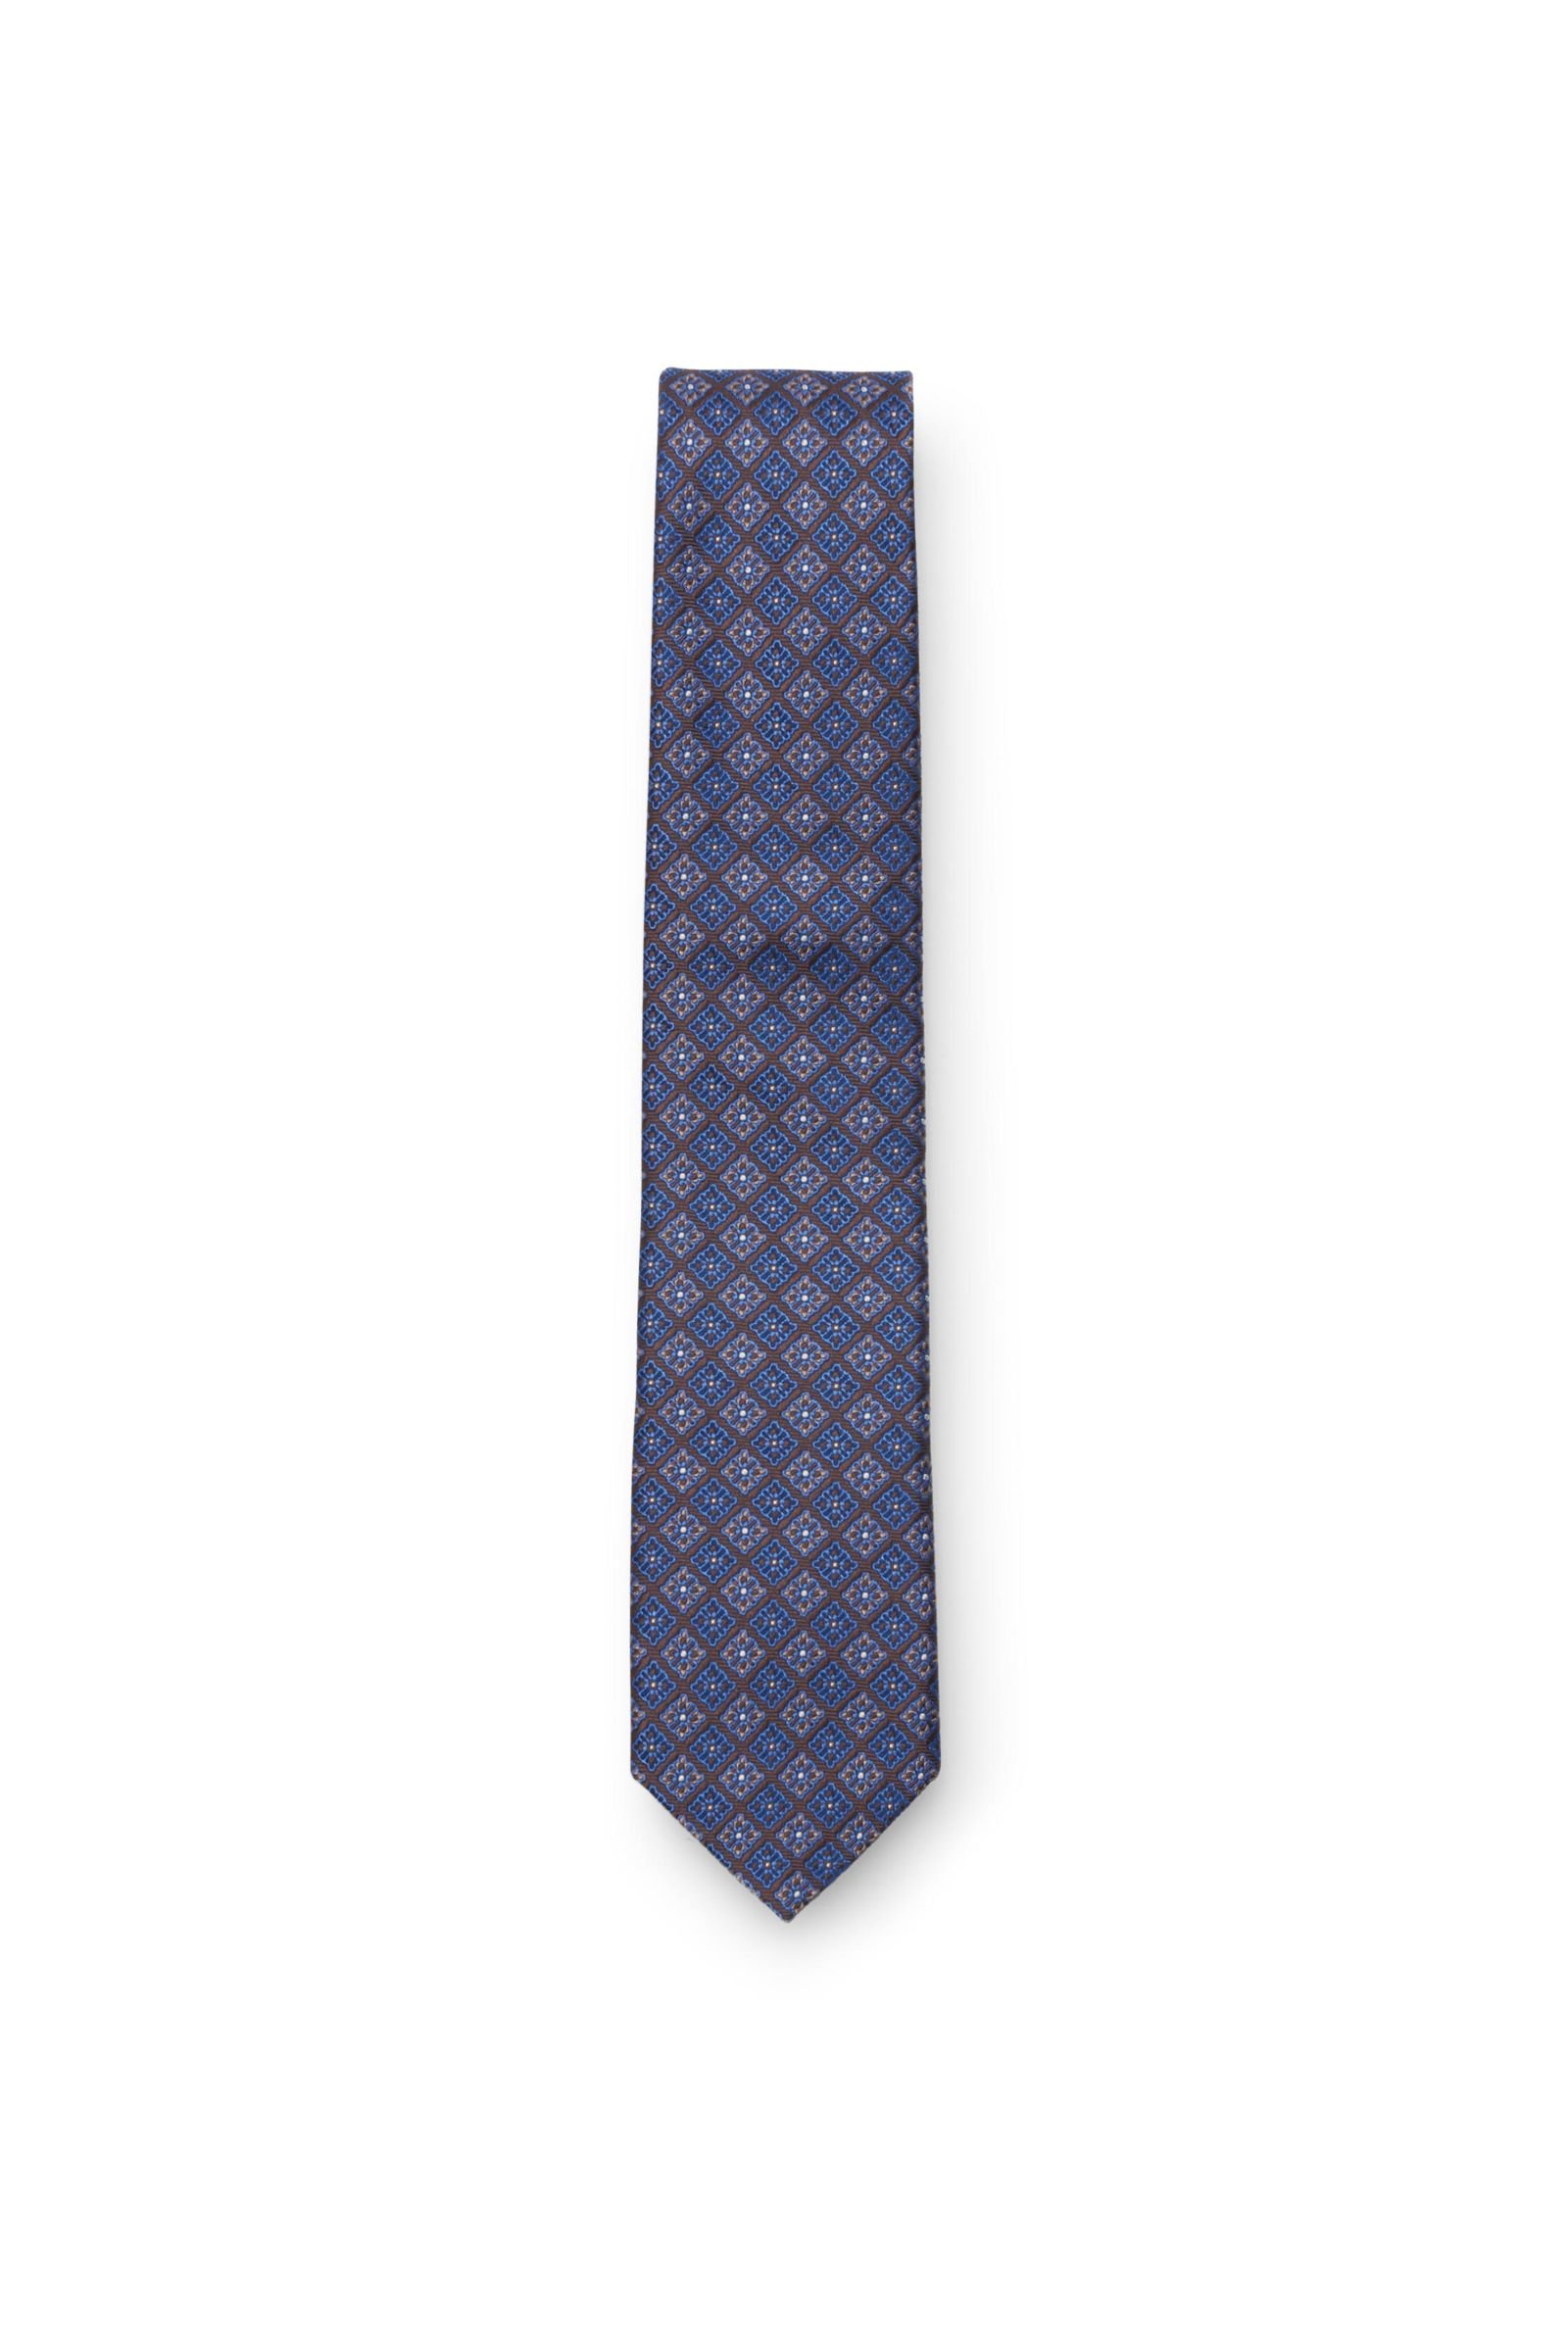 Silk tie dark brown/blue patterned